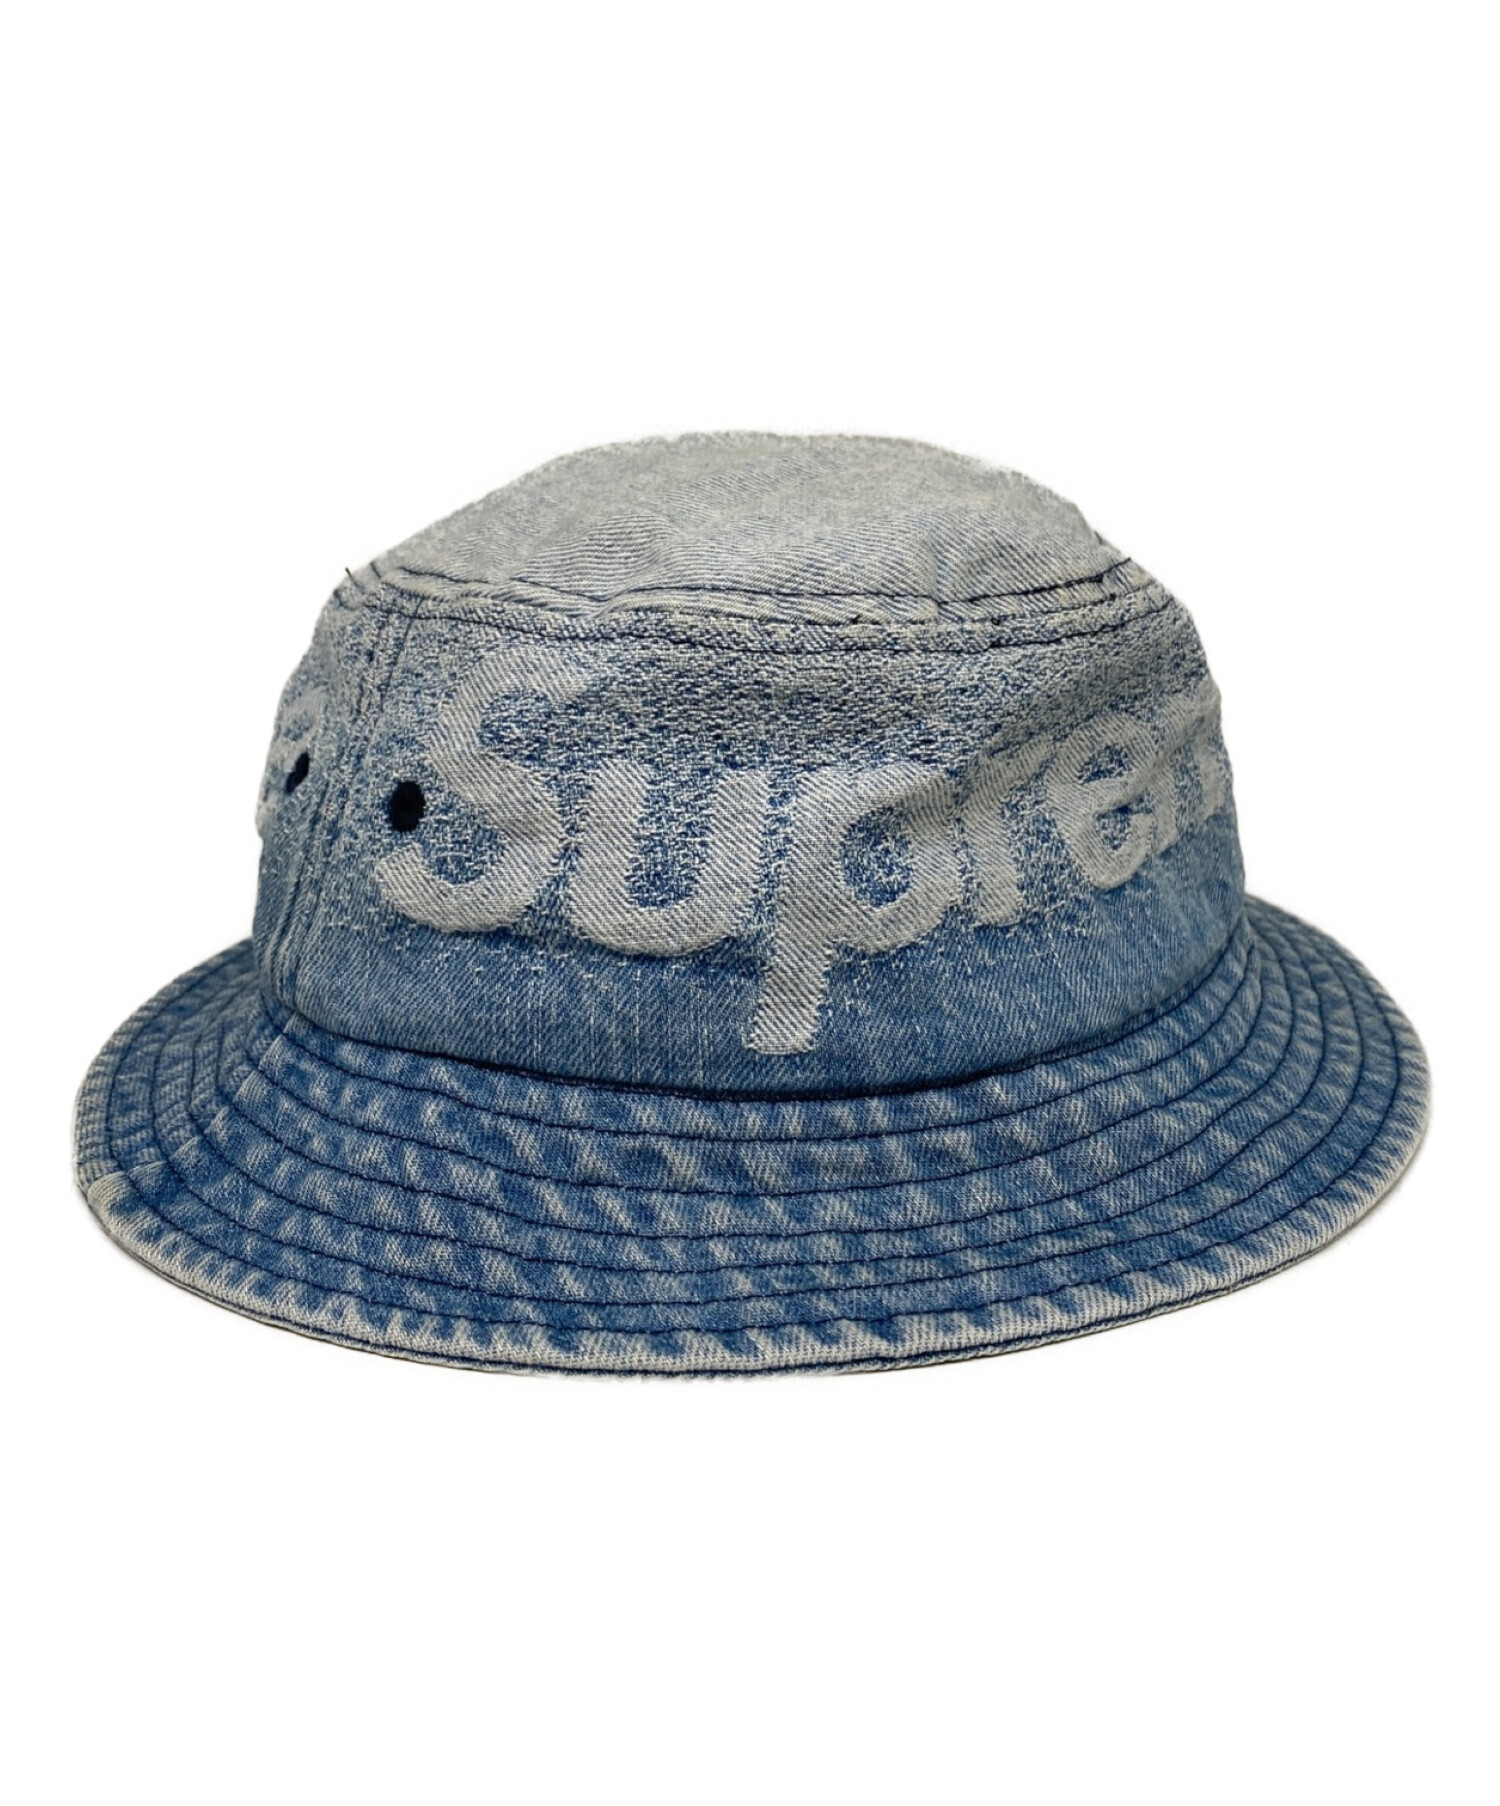 帽子supreme fade jacquard denim crusher s/m